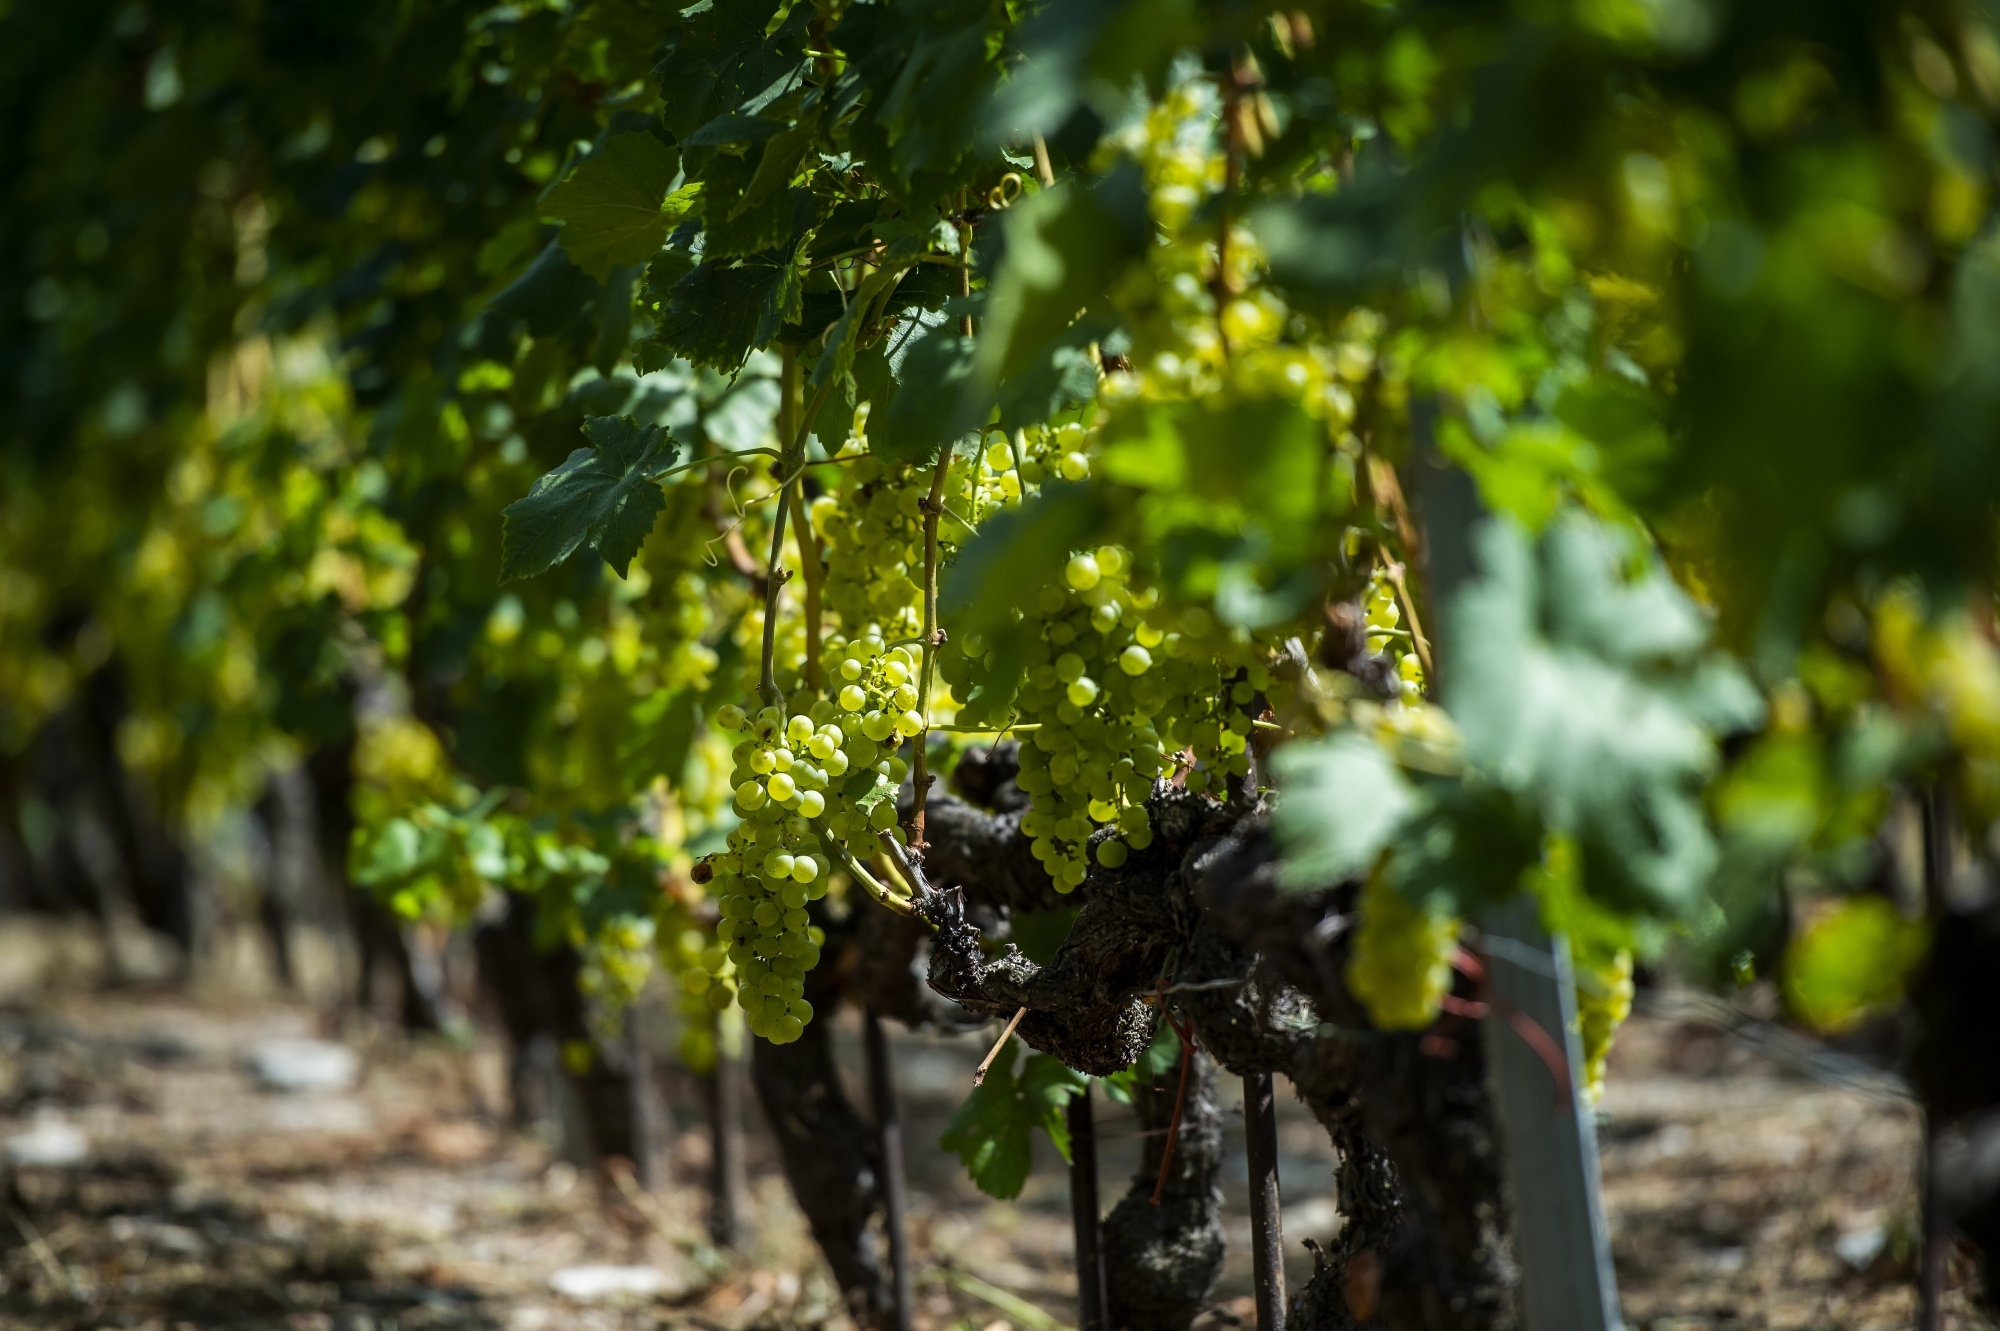 Les acteurs de la vigne et du vin espèrent que les actions promotionnelles en cours pour favoriser l’achat de vin suisse dans la grande distribution et les établissements publics permettront d'enrayer la crise.